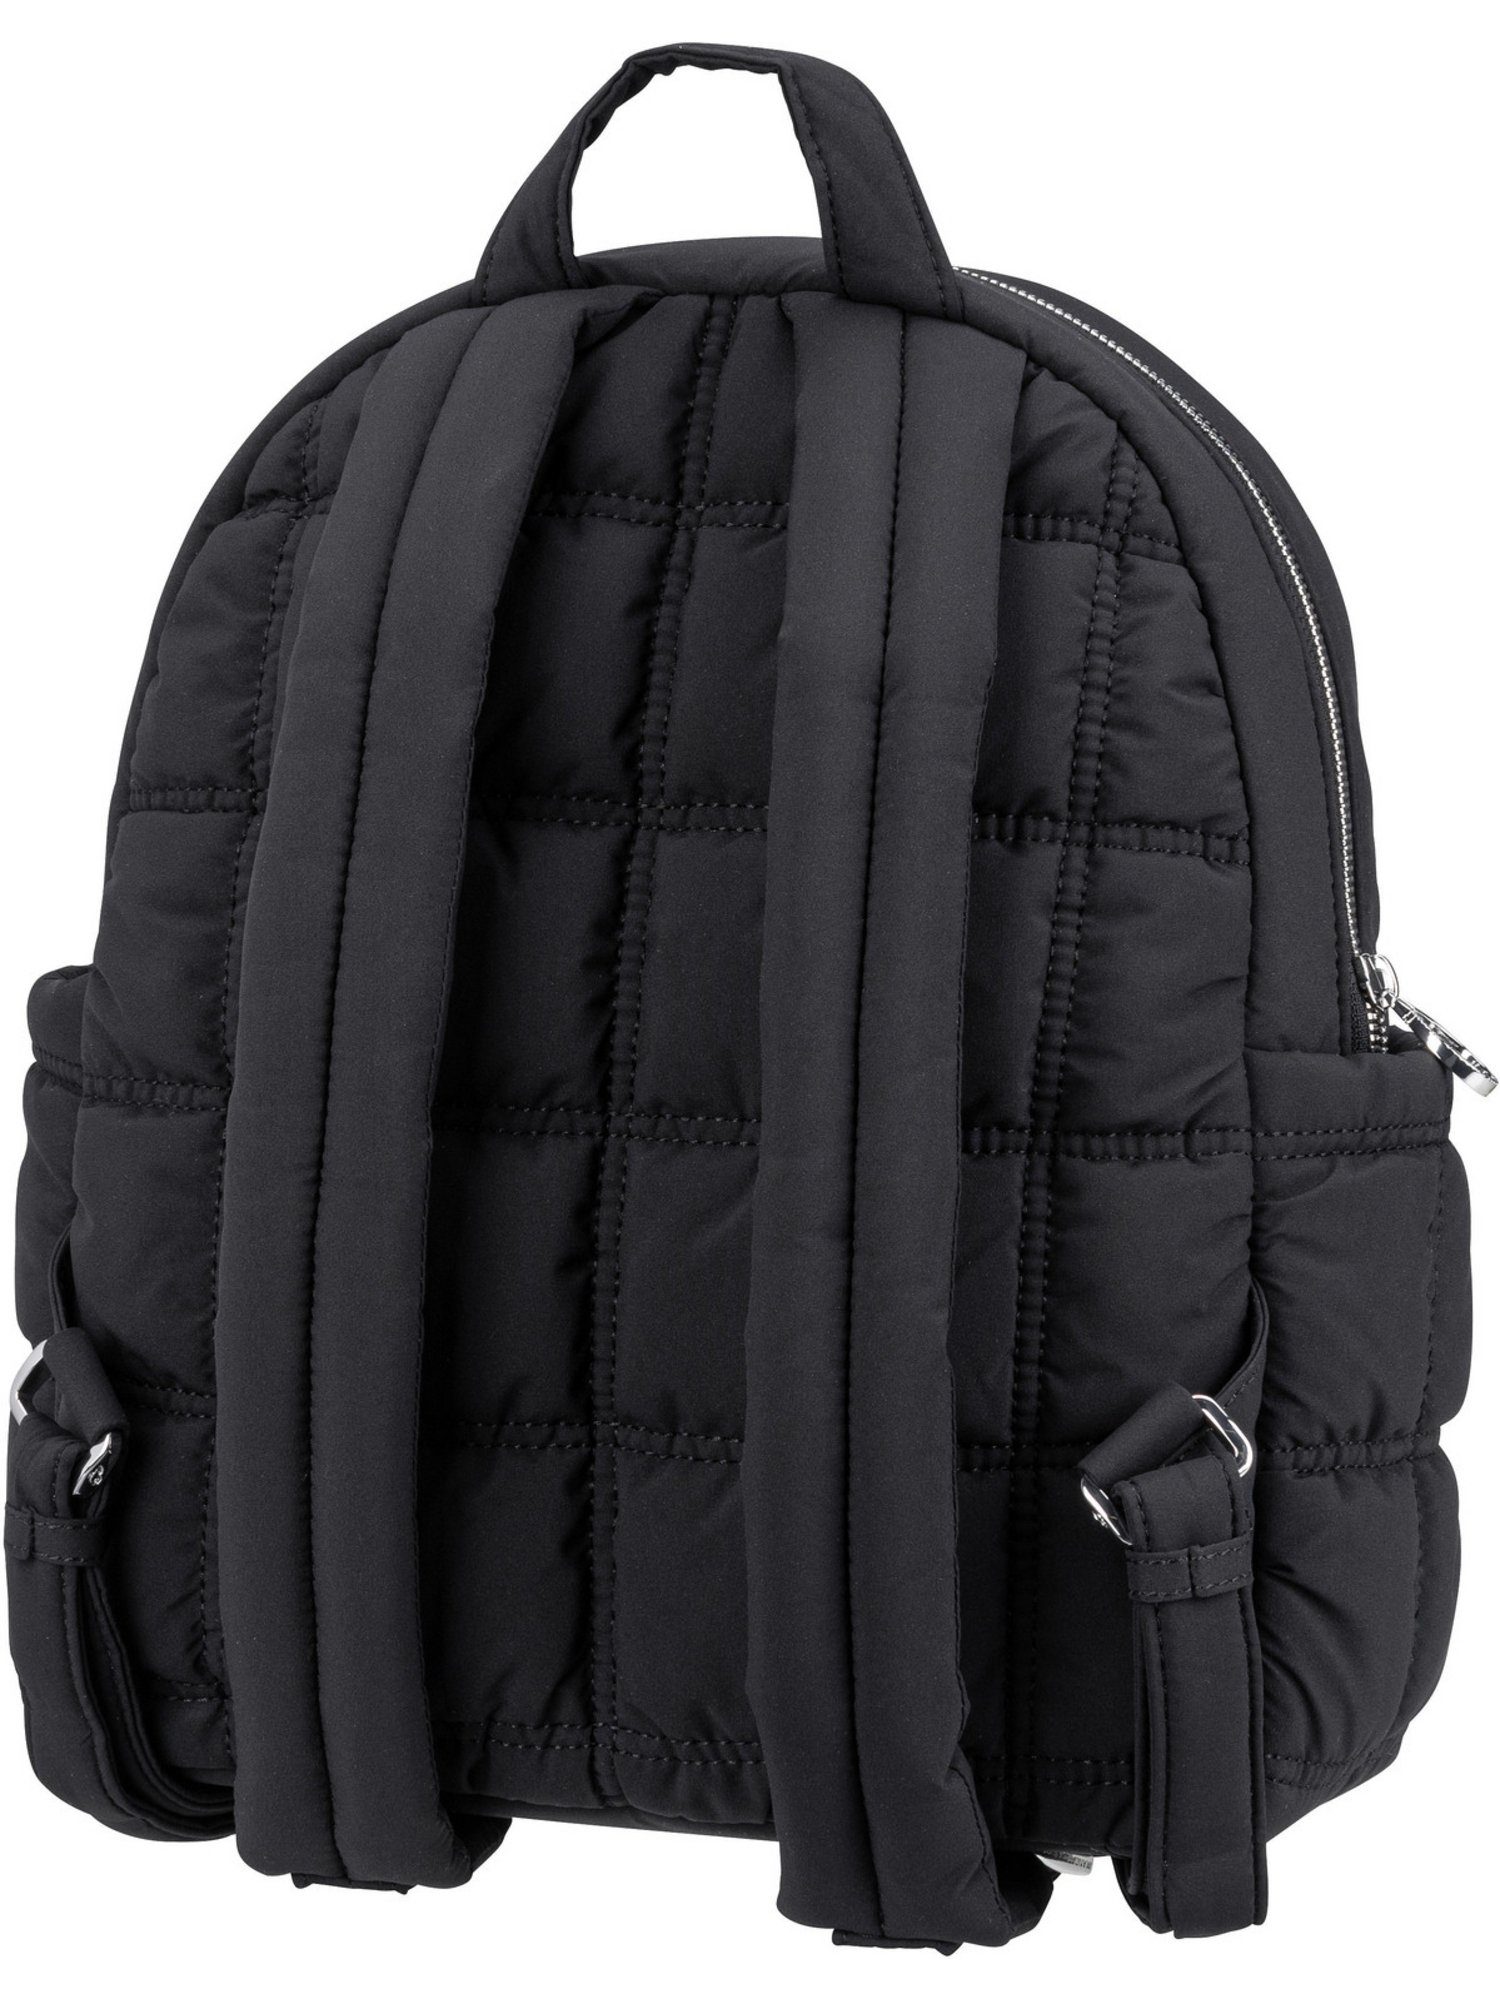 Backpack Black Duck Dream Pillow Rucksack ODT07 Mandarina